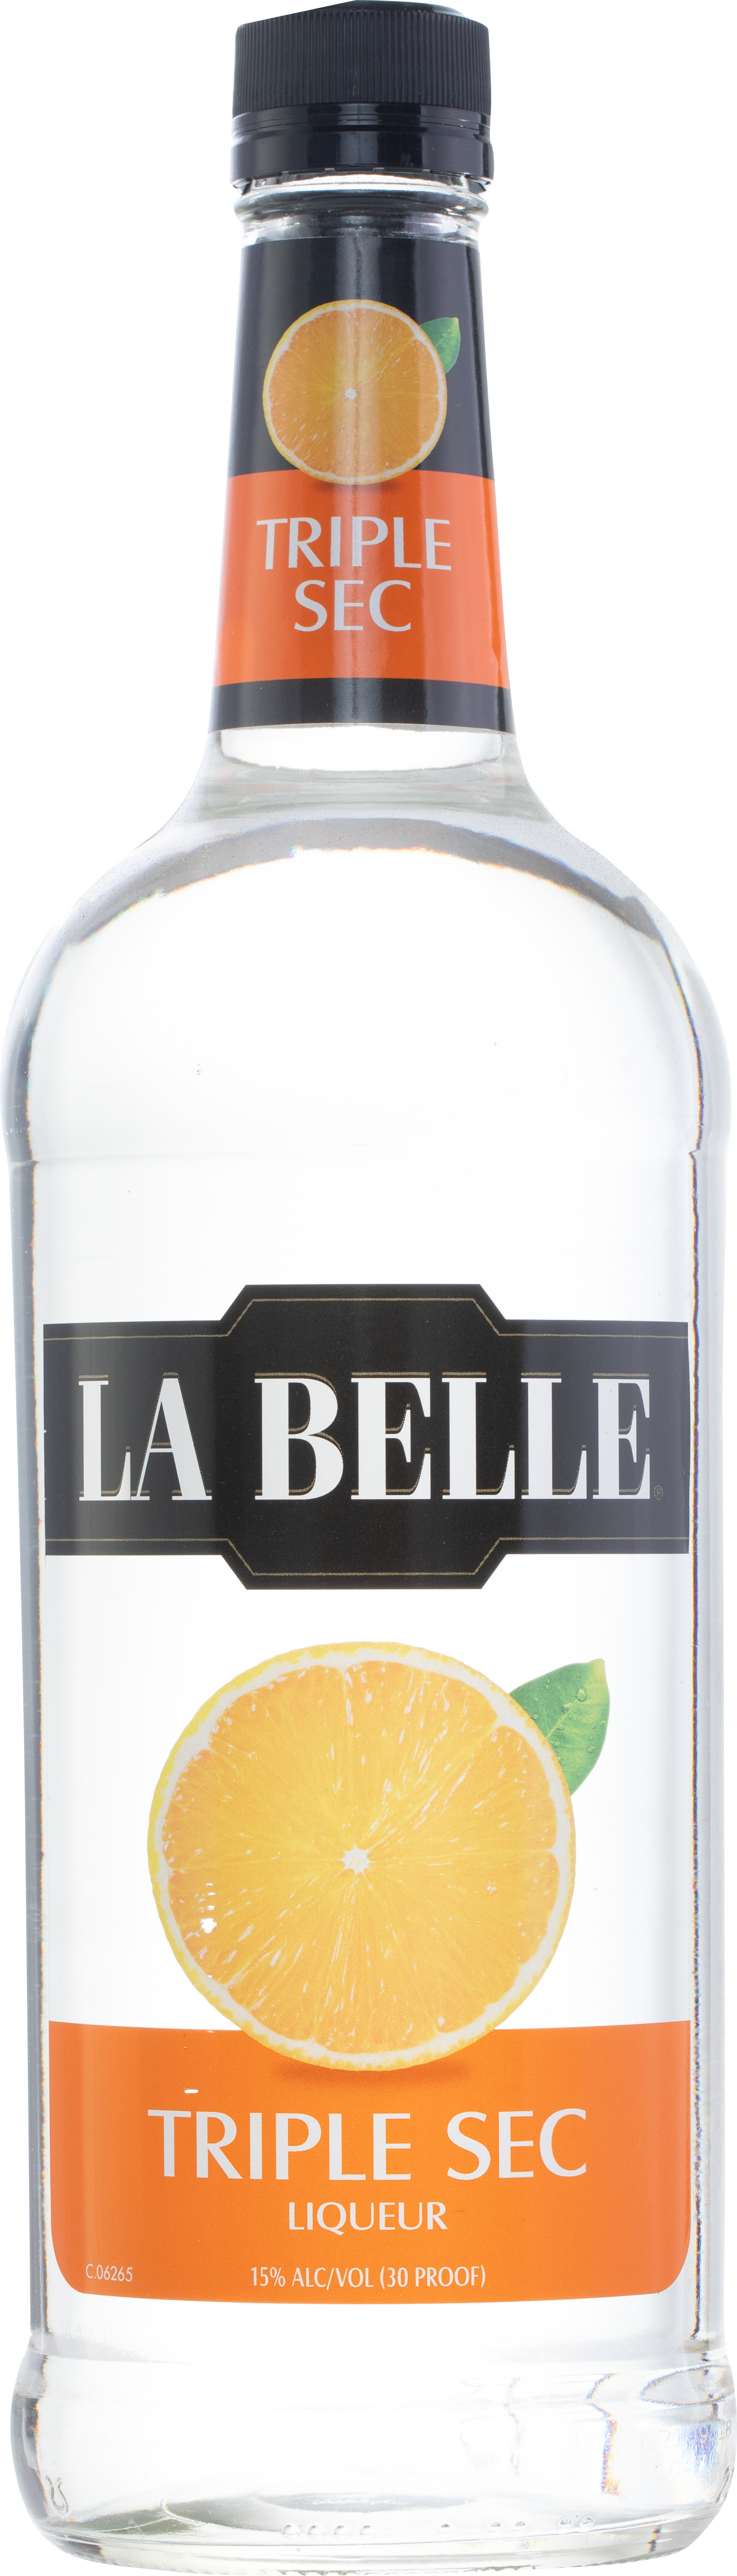 La Belle Triple Sec Liqueur 1L - Royalwine - Royalwine